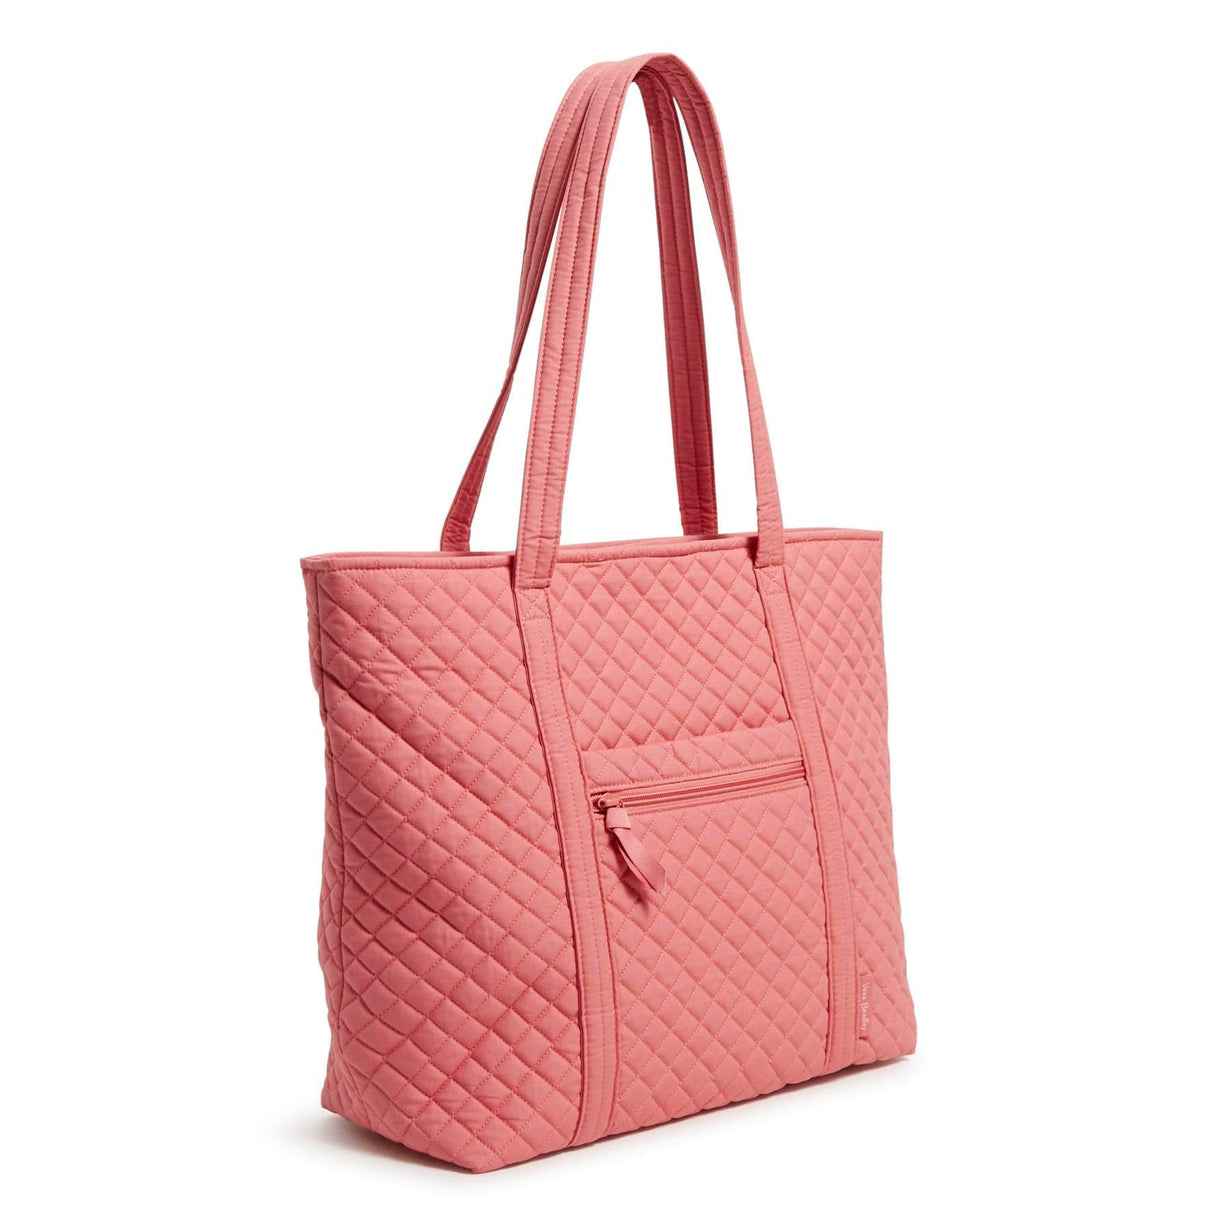 Vera Bradley Outlet | Multi-Strap Shoulder Bag – Vera Bradley Outlet Store